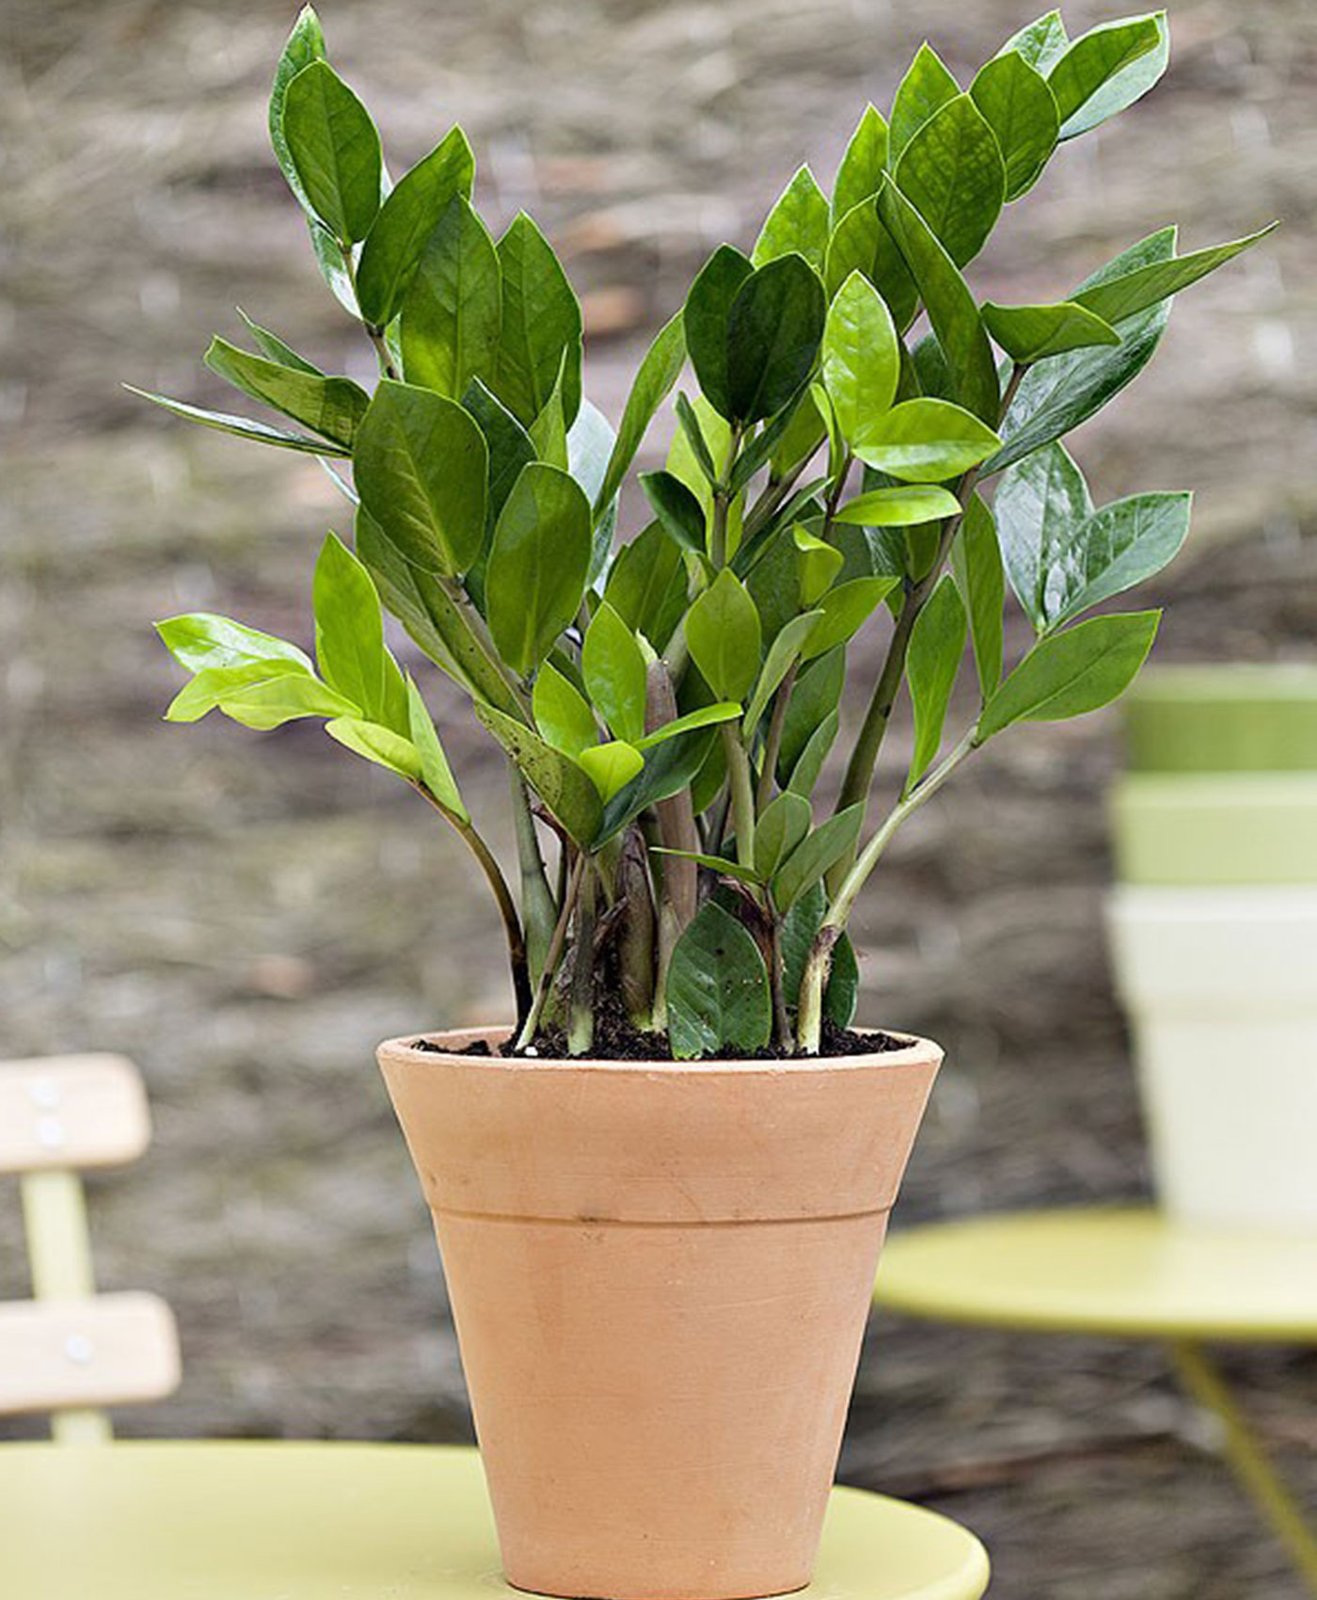 Une plante verte zamioculcas dans un pot en terre cuite